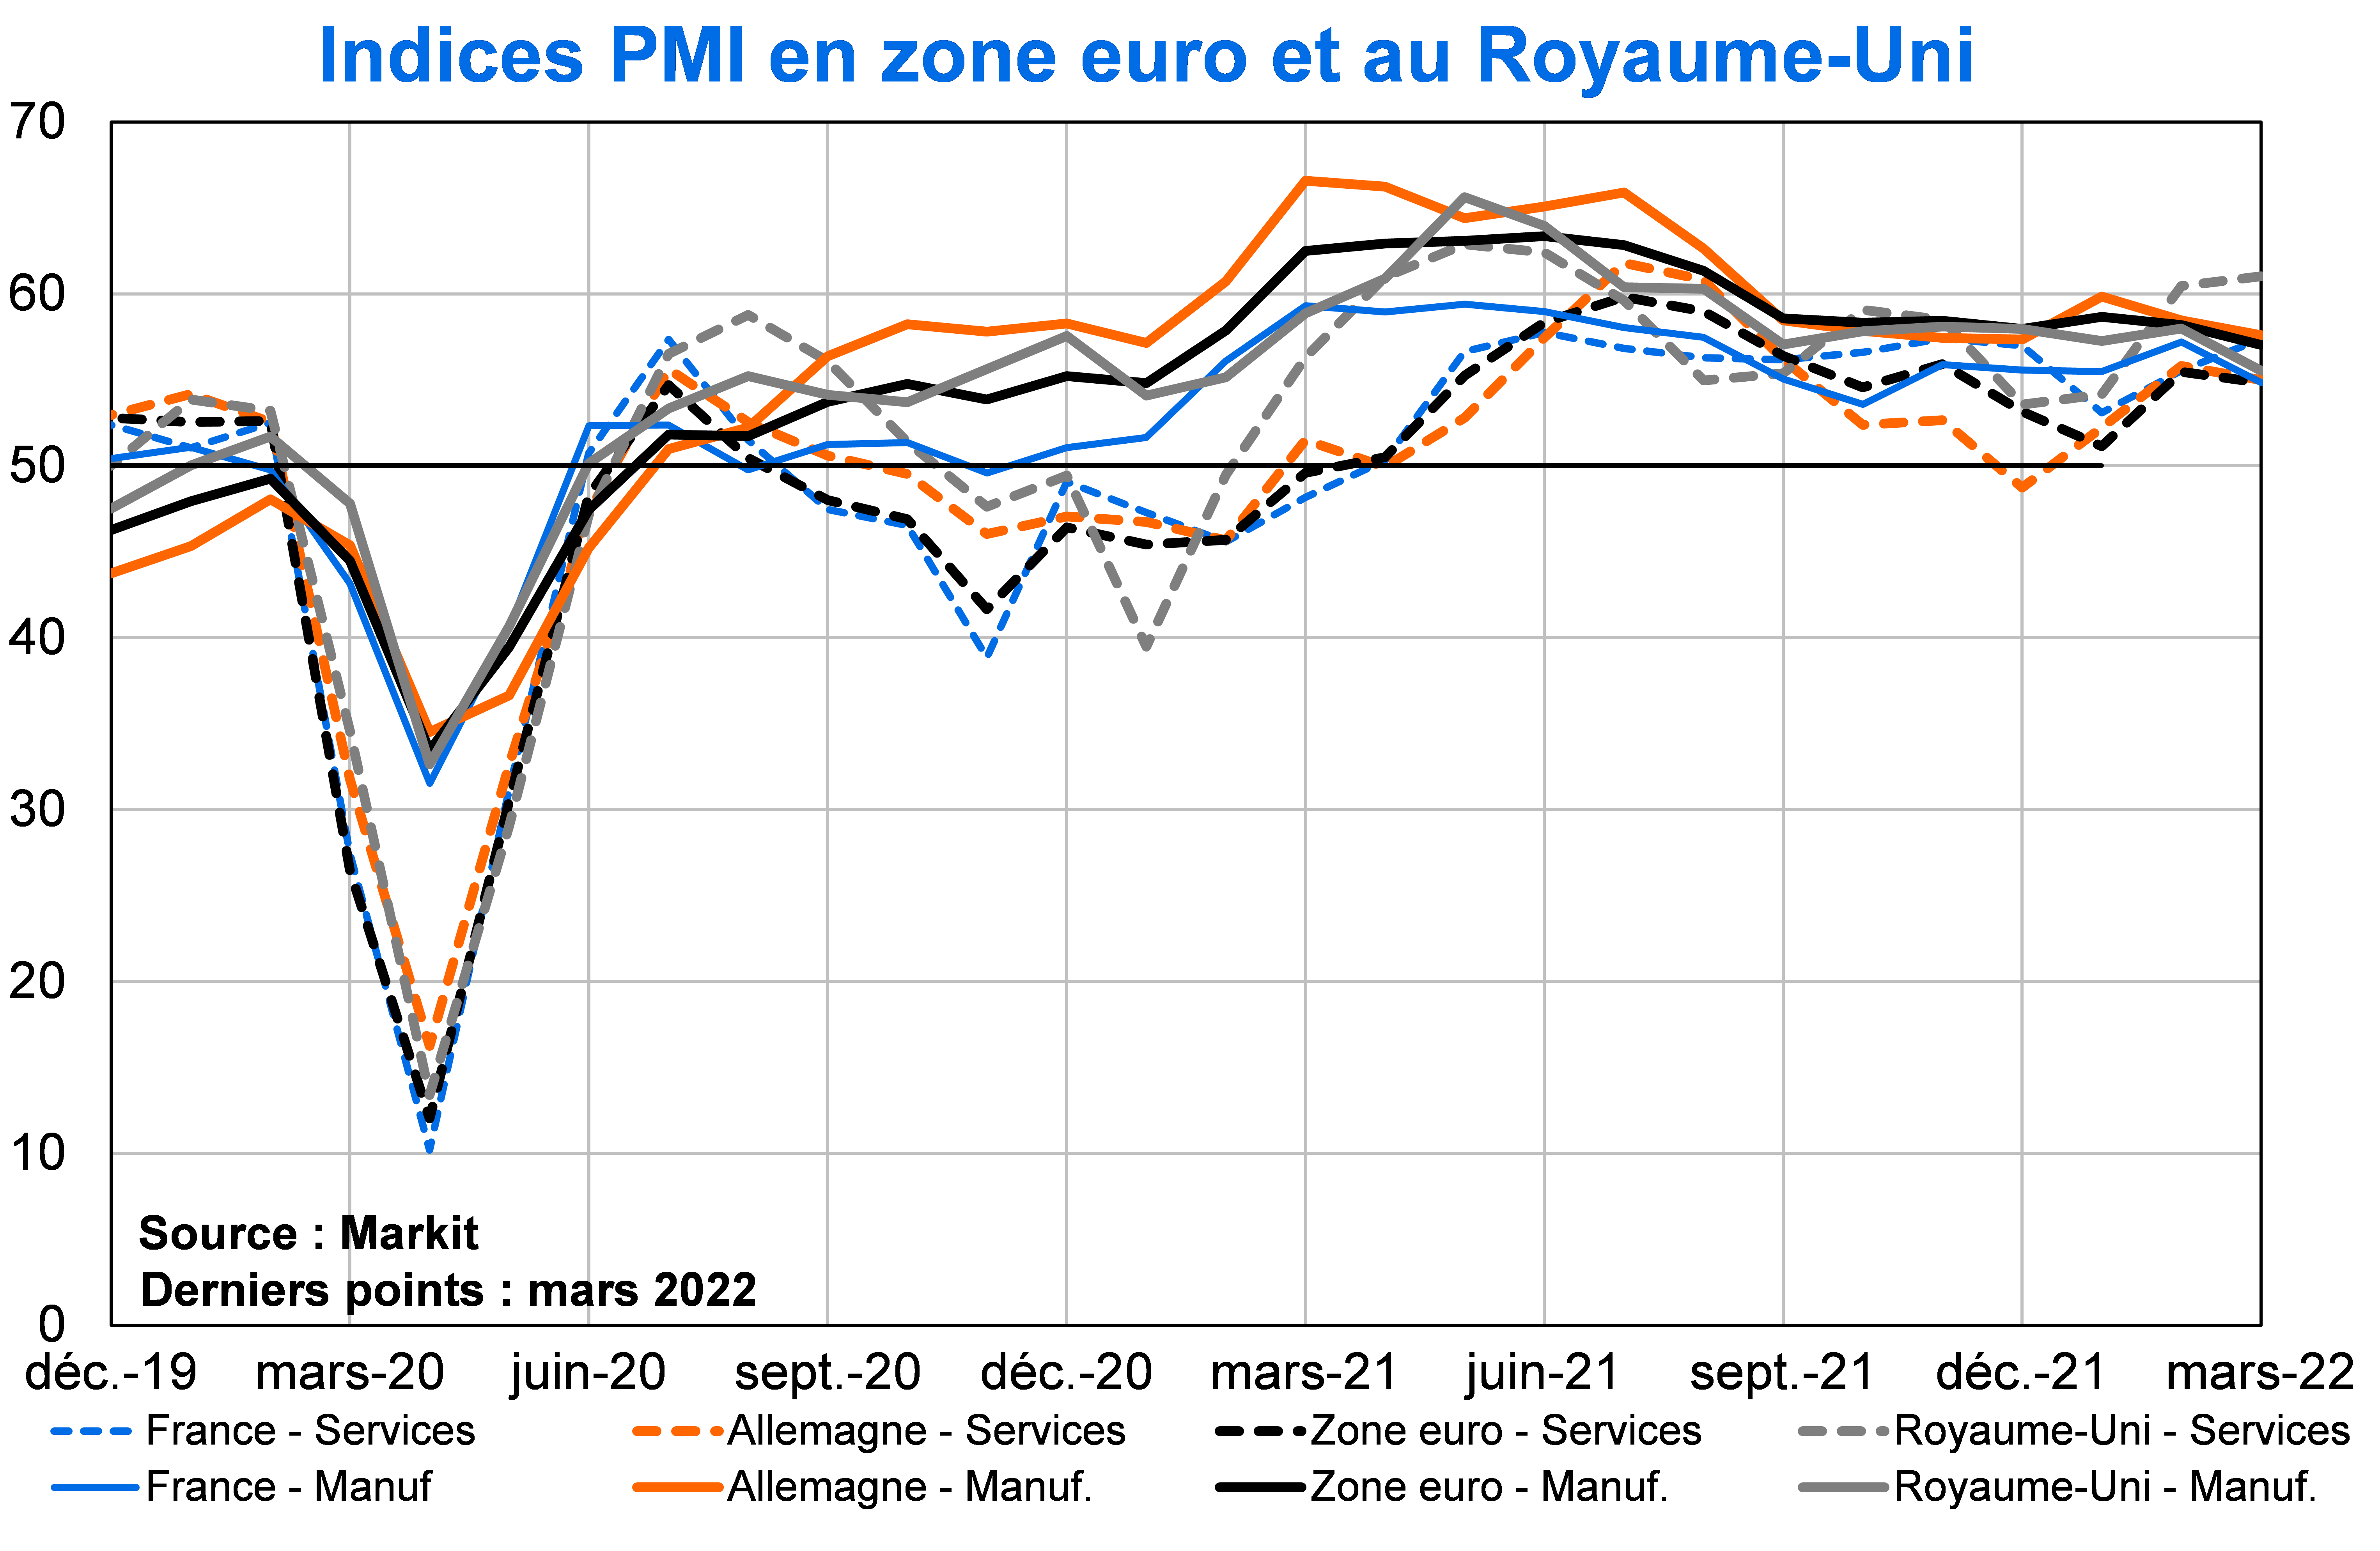 Indices PMI en Zone euro et au Royaume-Uni